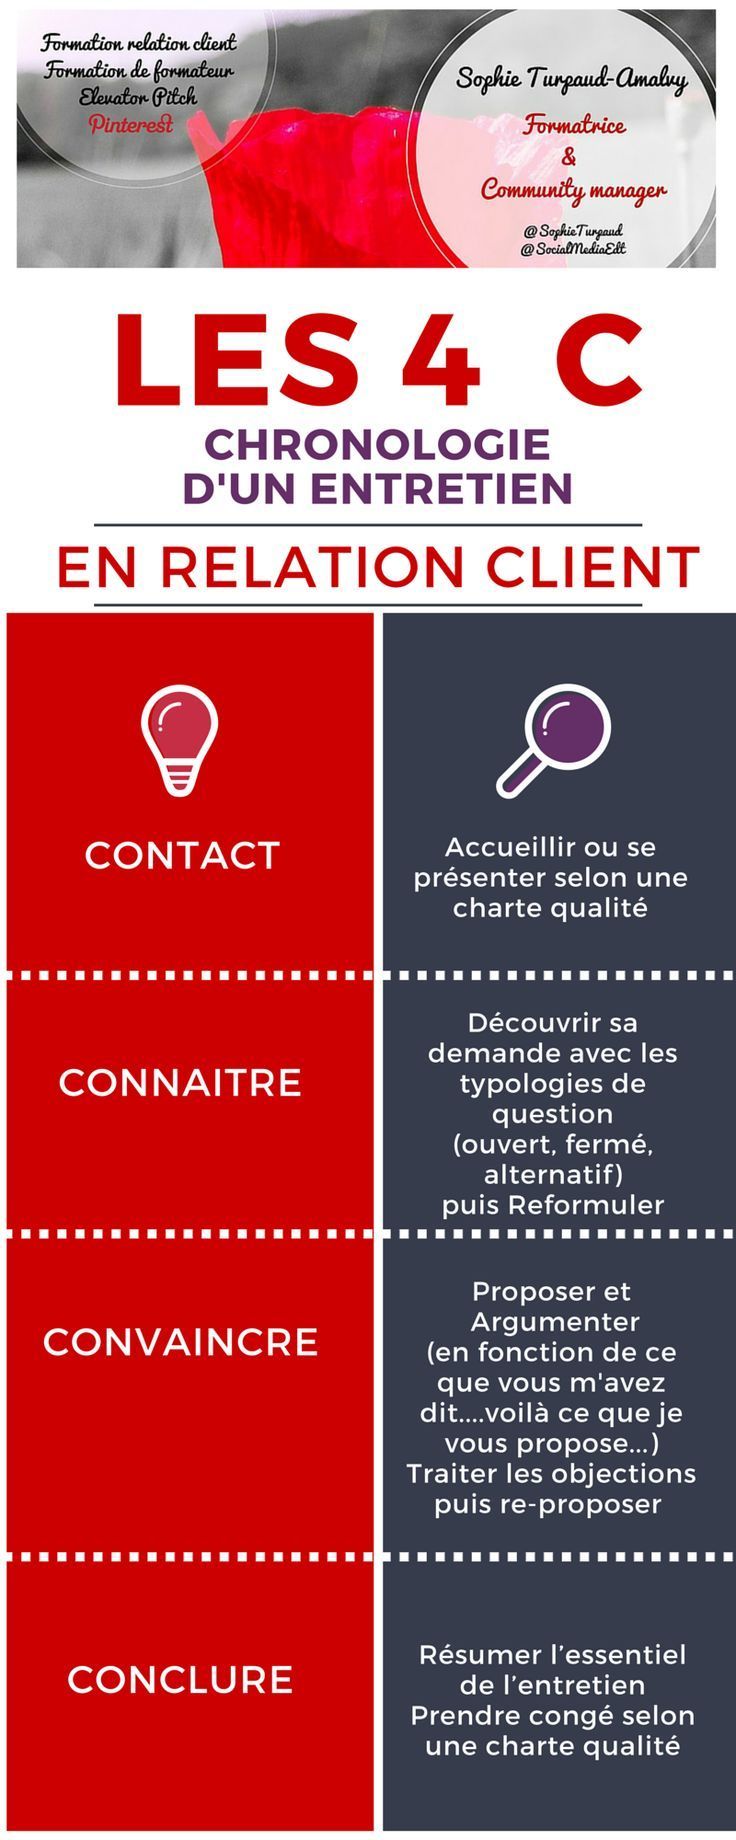 1560515160_766_Psychology-Infographic-Les-4-C-en-communication-relation-client Psychology Infographic : Les 4 C en communication relation client